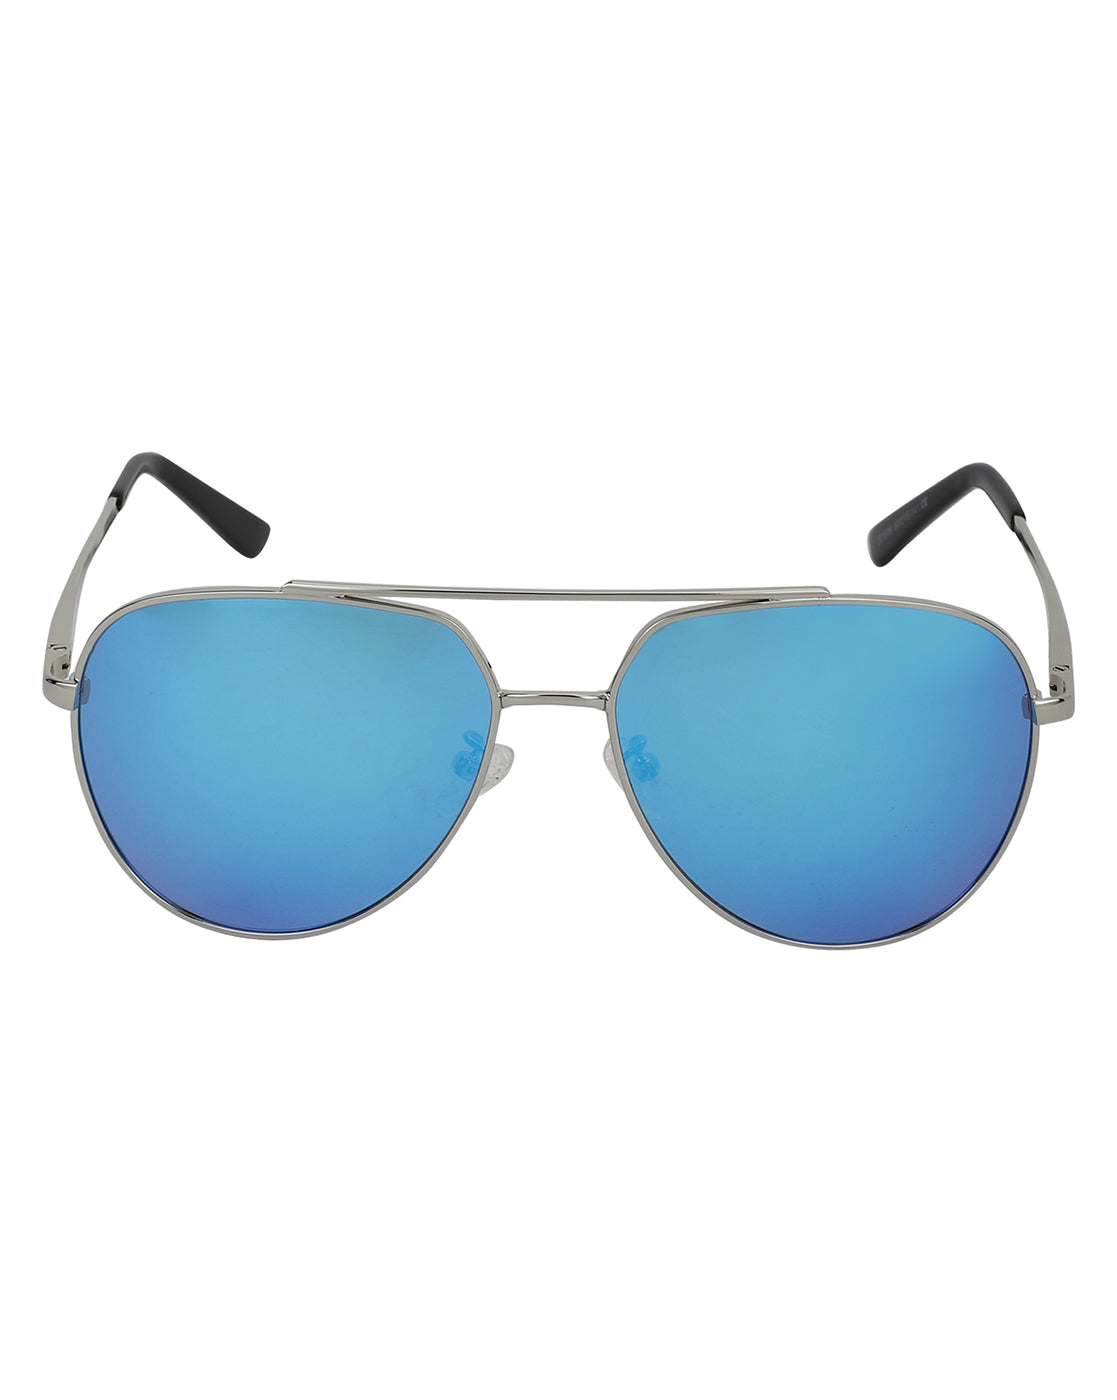 Bloke Polarised Sunglasses in Green Mirror | Costa Del Mar®